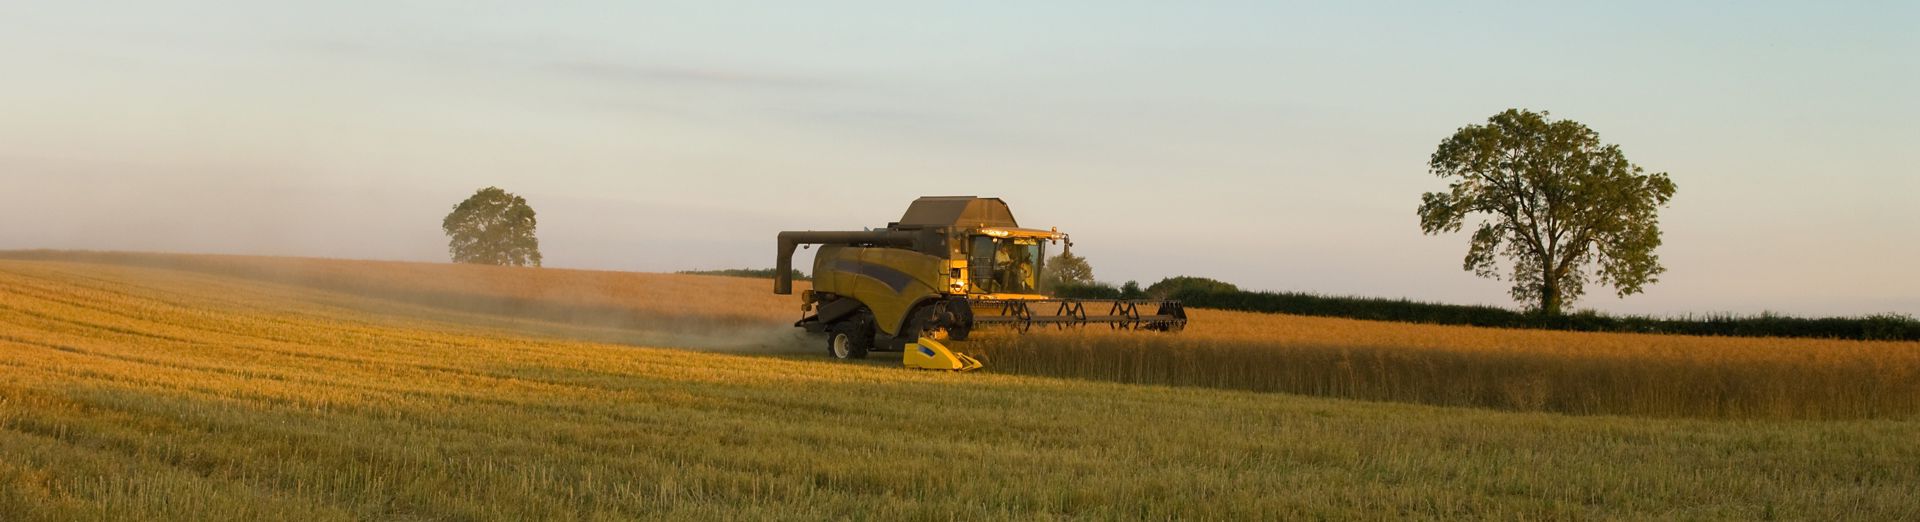 Image d'une moissonneuse-batteuse dans un champ de blé, pour symboliser le secteur agroalimentaire